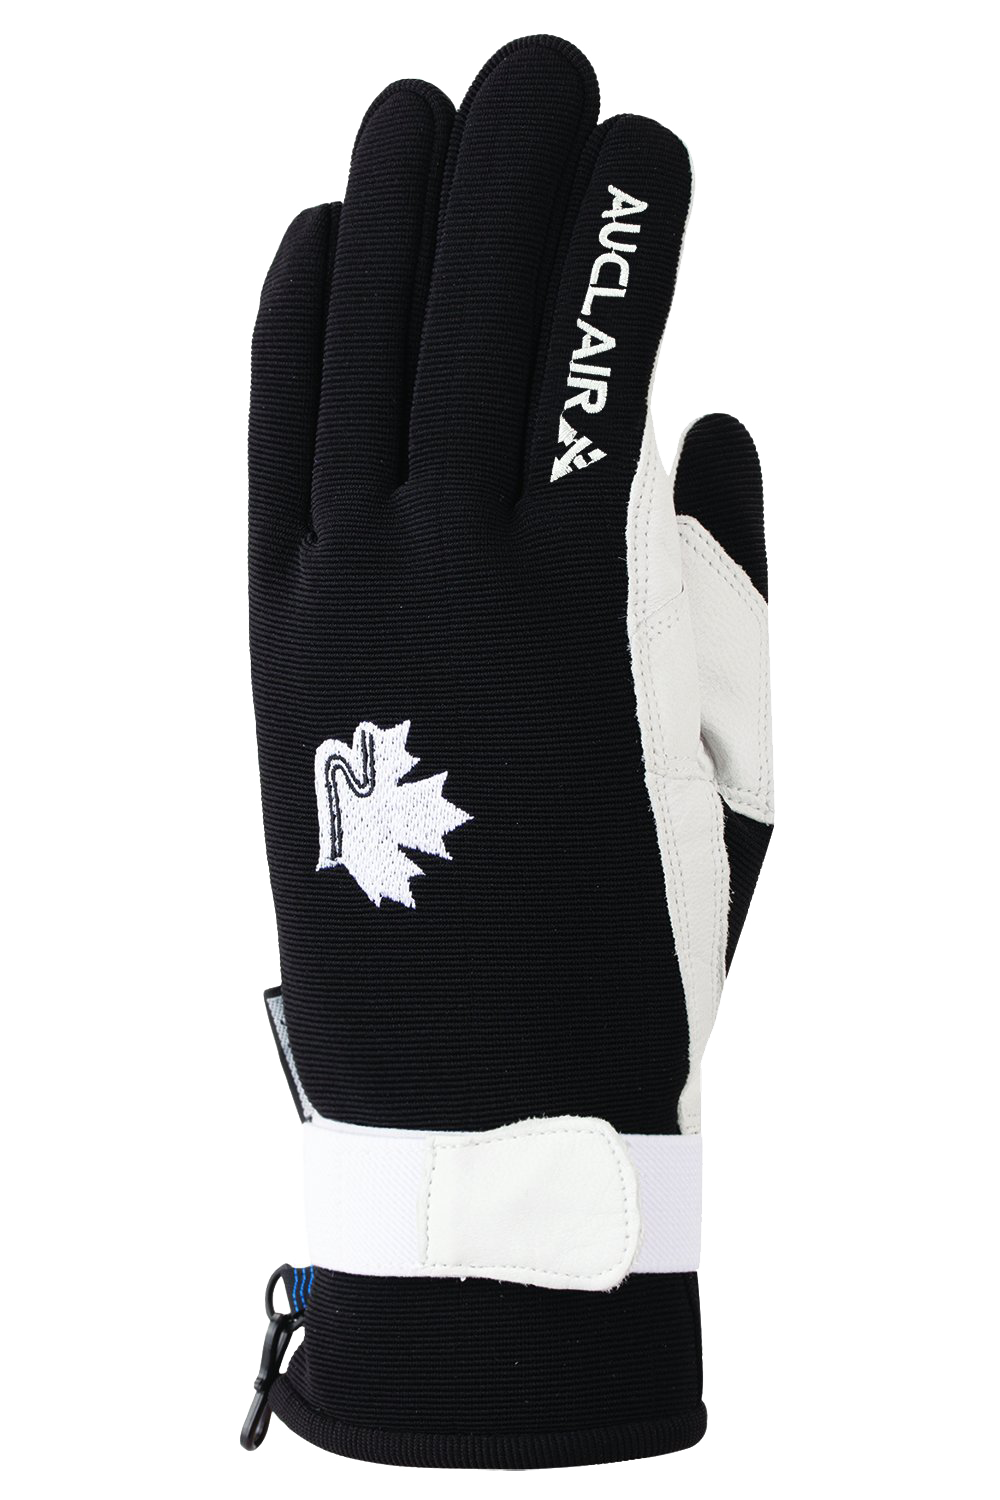 Skater Gloves - Women-Glove-Auclair-XL-BLACK/WHITE-Auclair Sports